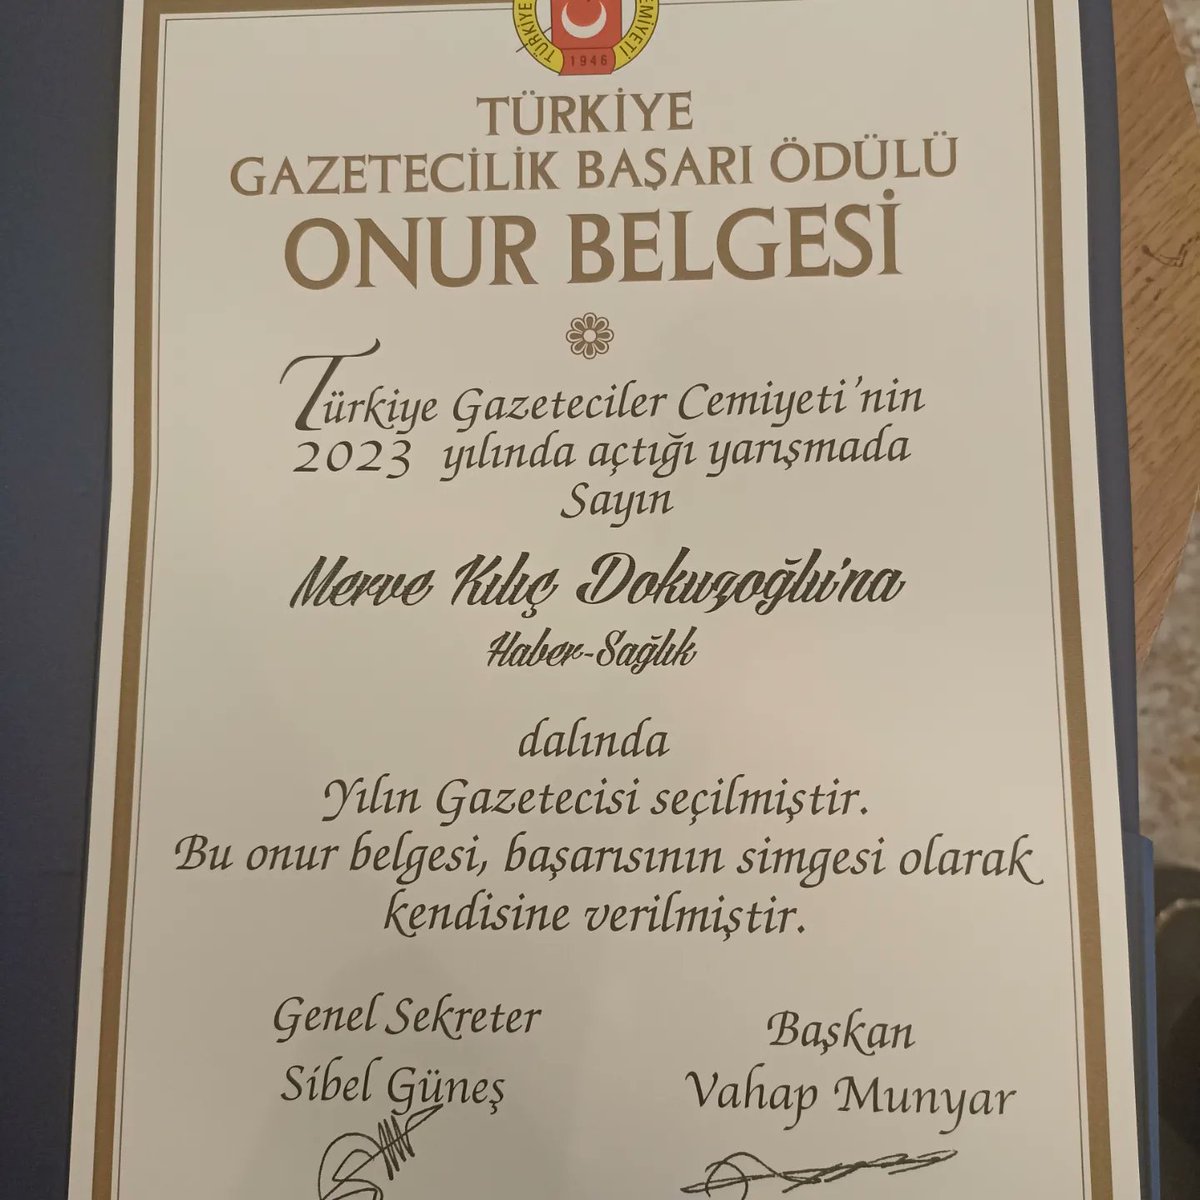 Türkiye Gazeteciler Cemiyeti'ne 'Gata'da iplik bile yok' haberim nedeniyle beni sağlık haberi alanında basın ödülüne değer bulduğu için çok teşekkür ederim. Gazetemiz Cumhuriyet'i 100. yılında böyle temsil etmek benim için gurur verici. Sağlık haberlerini ilgiyle takip ettiğim